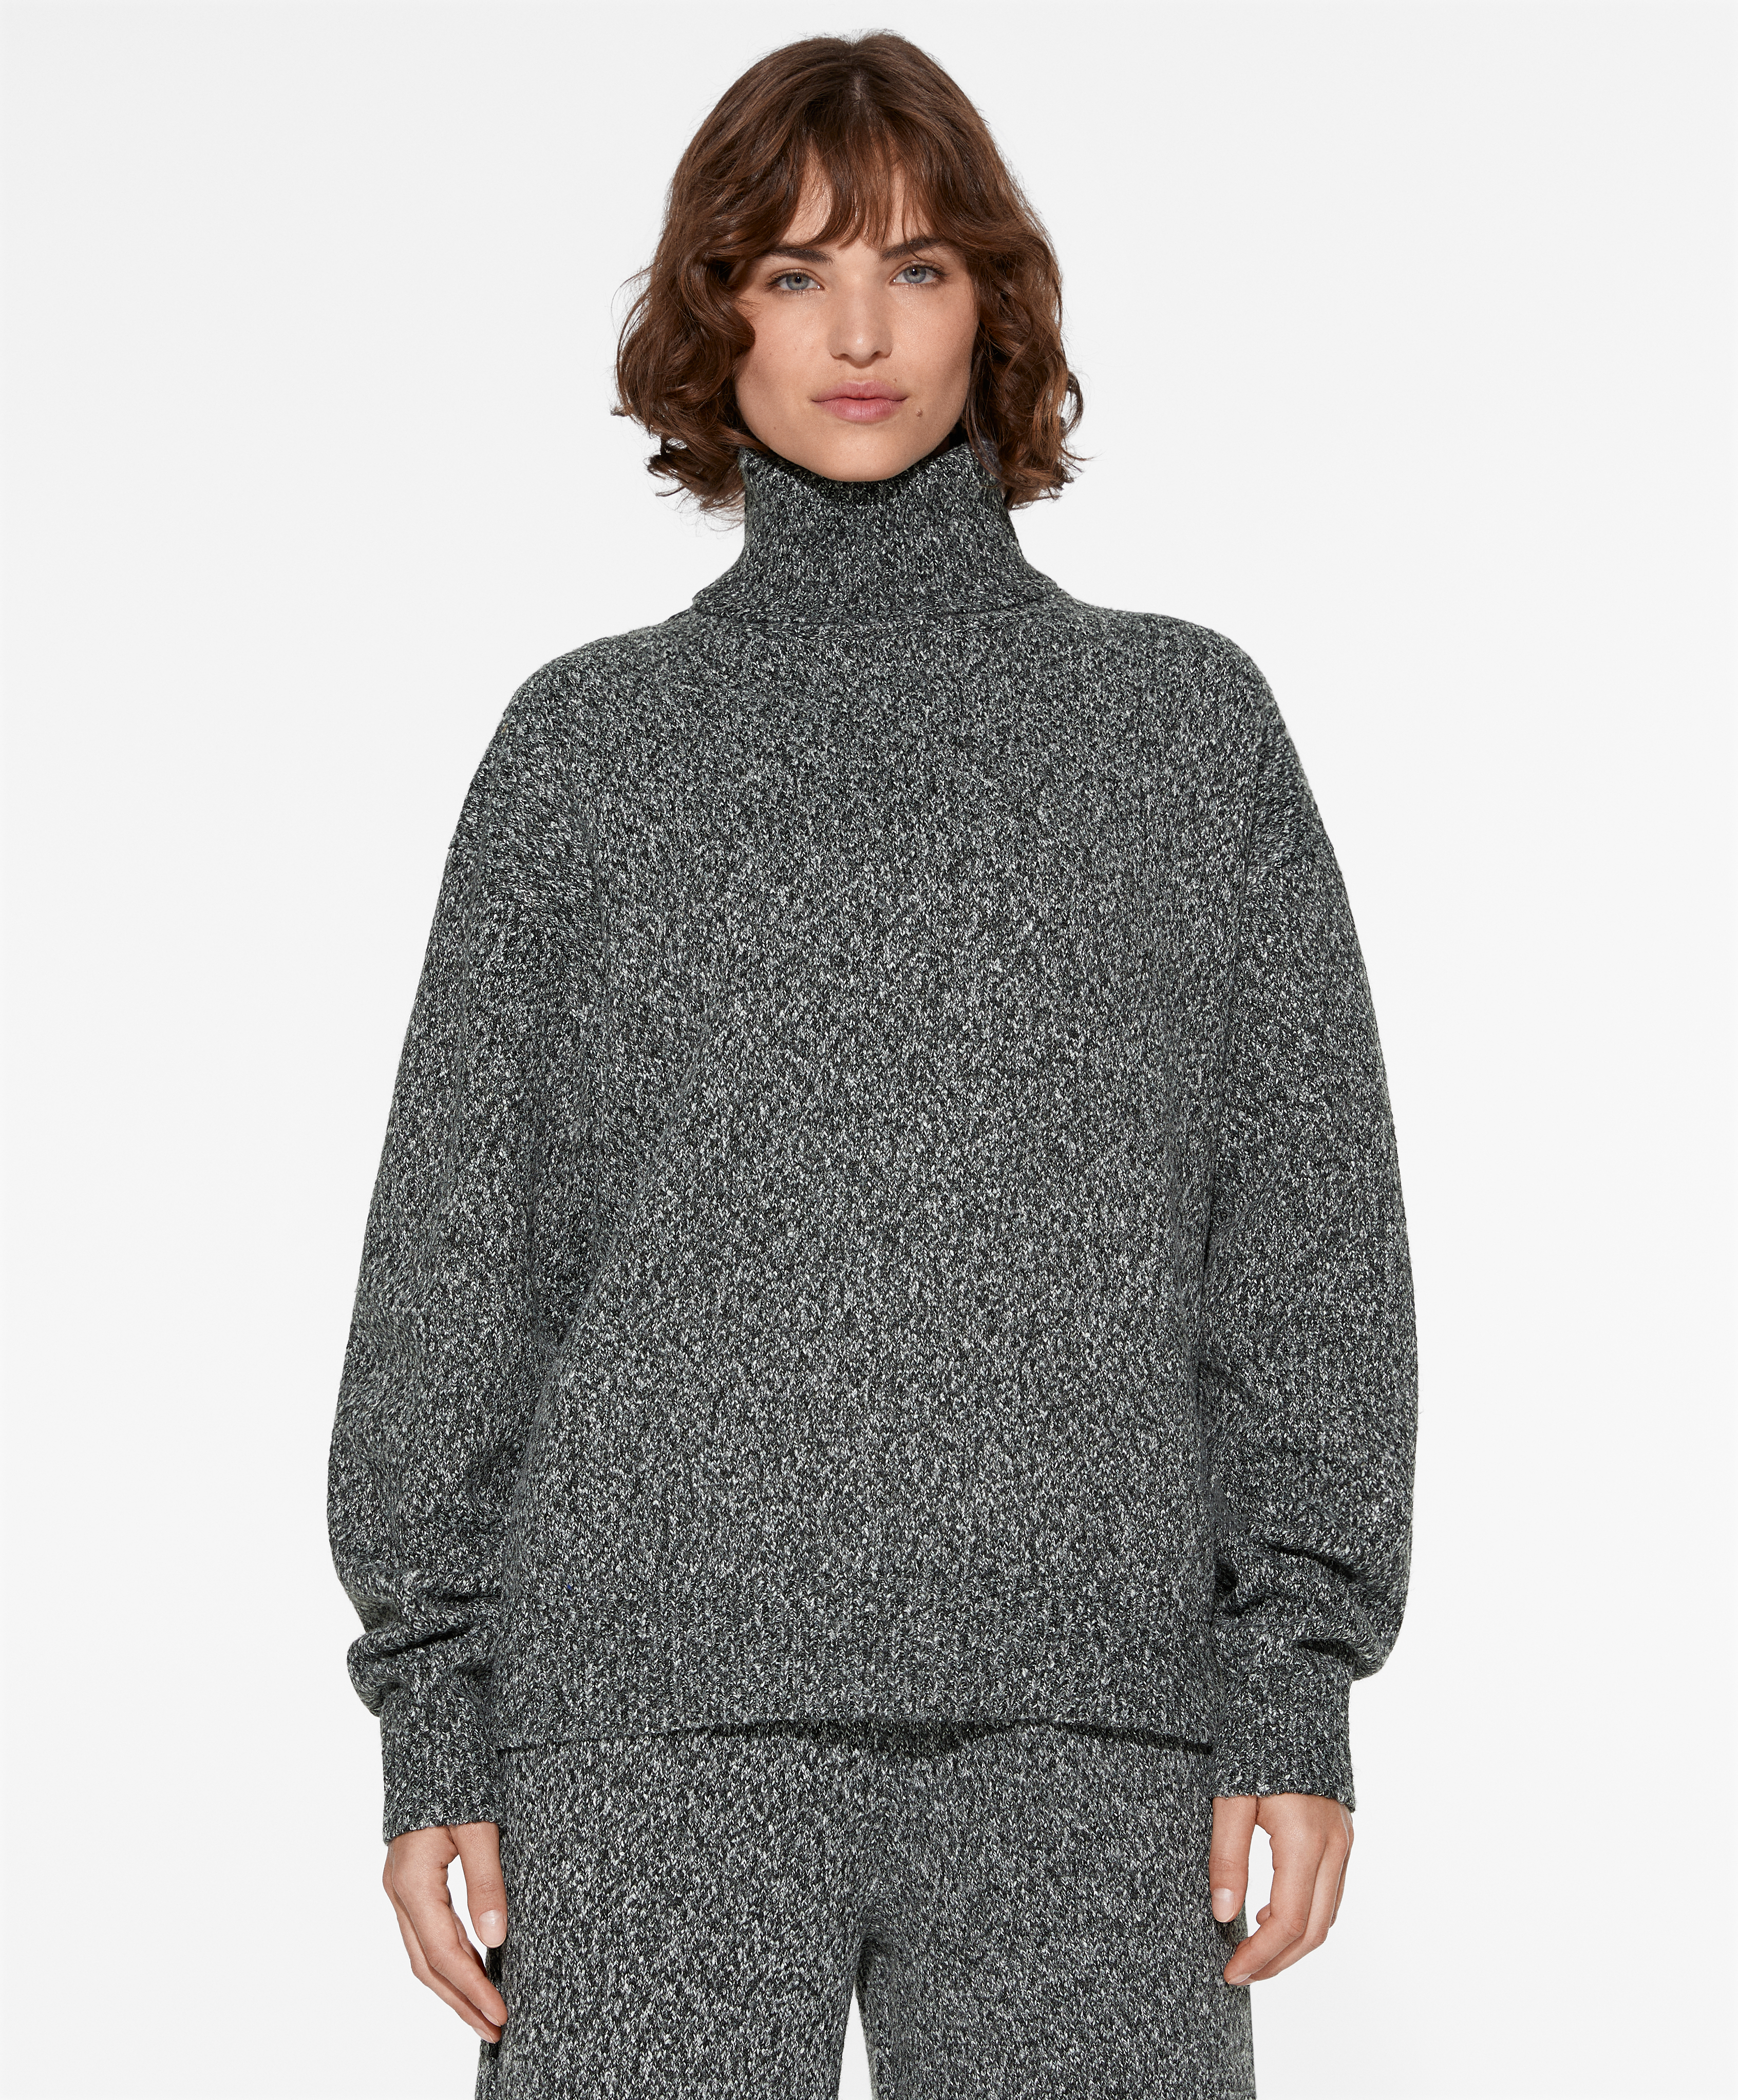 Πλεκτό πουλόβερ από στριμμένο νήμα με ψηλό γιακά